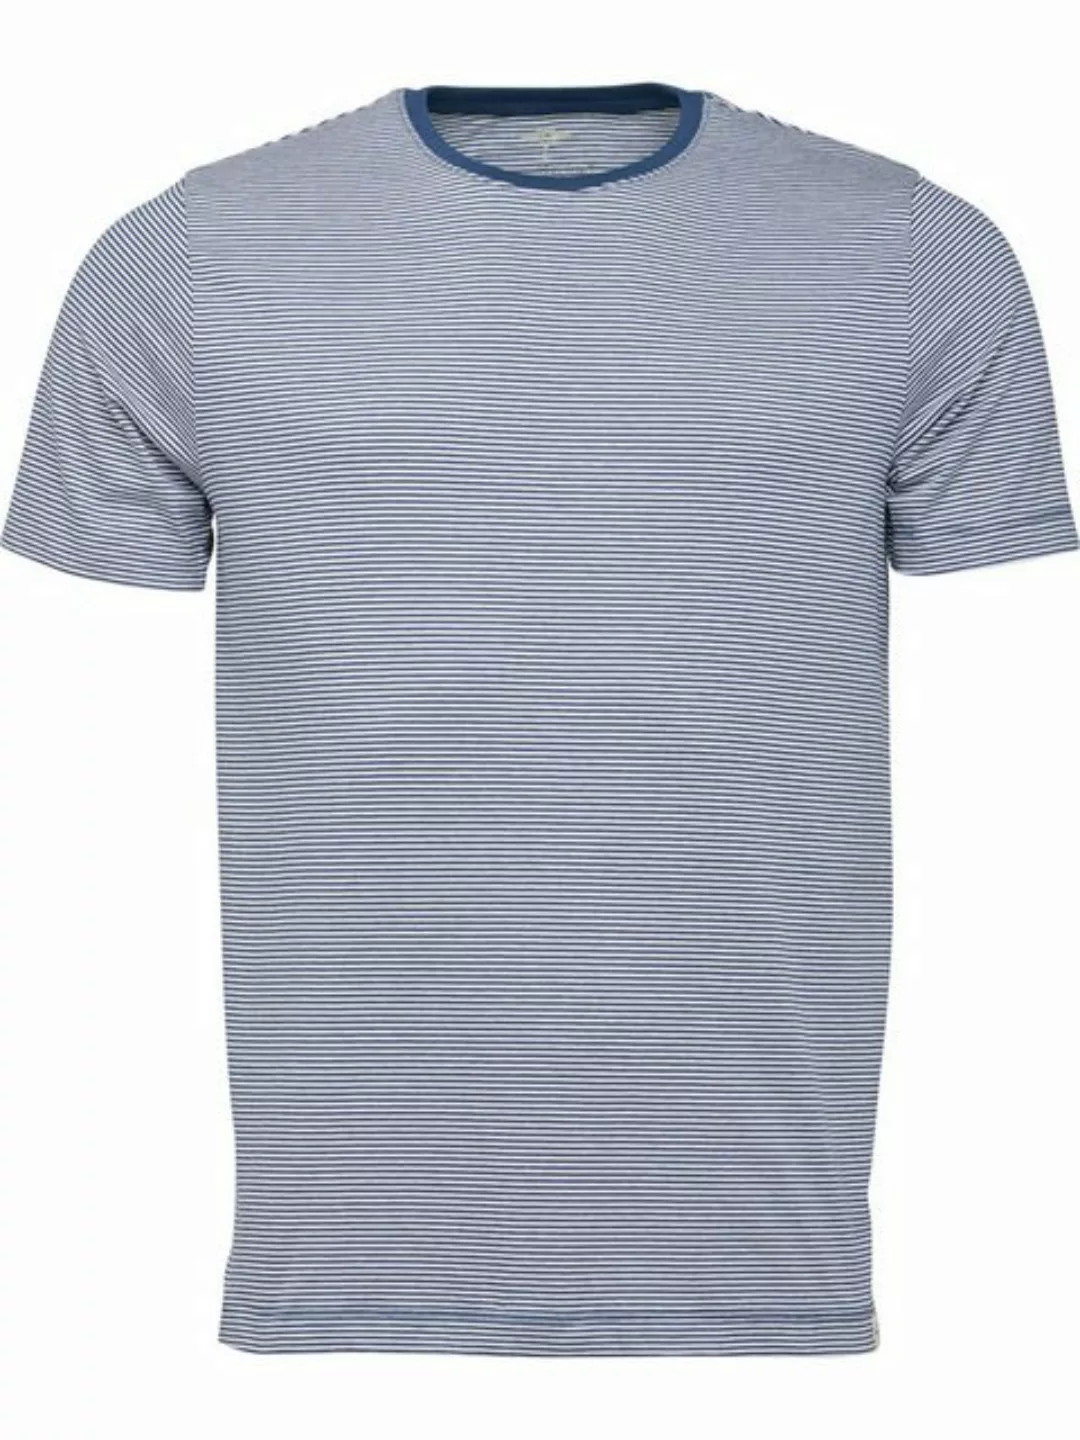 FYNCH-HATTON T-Shirt günstig online kaufen